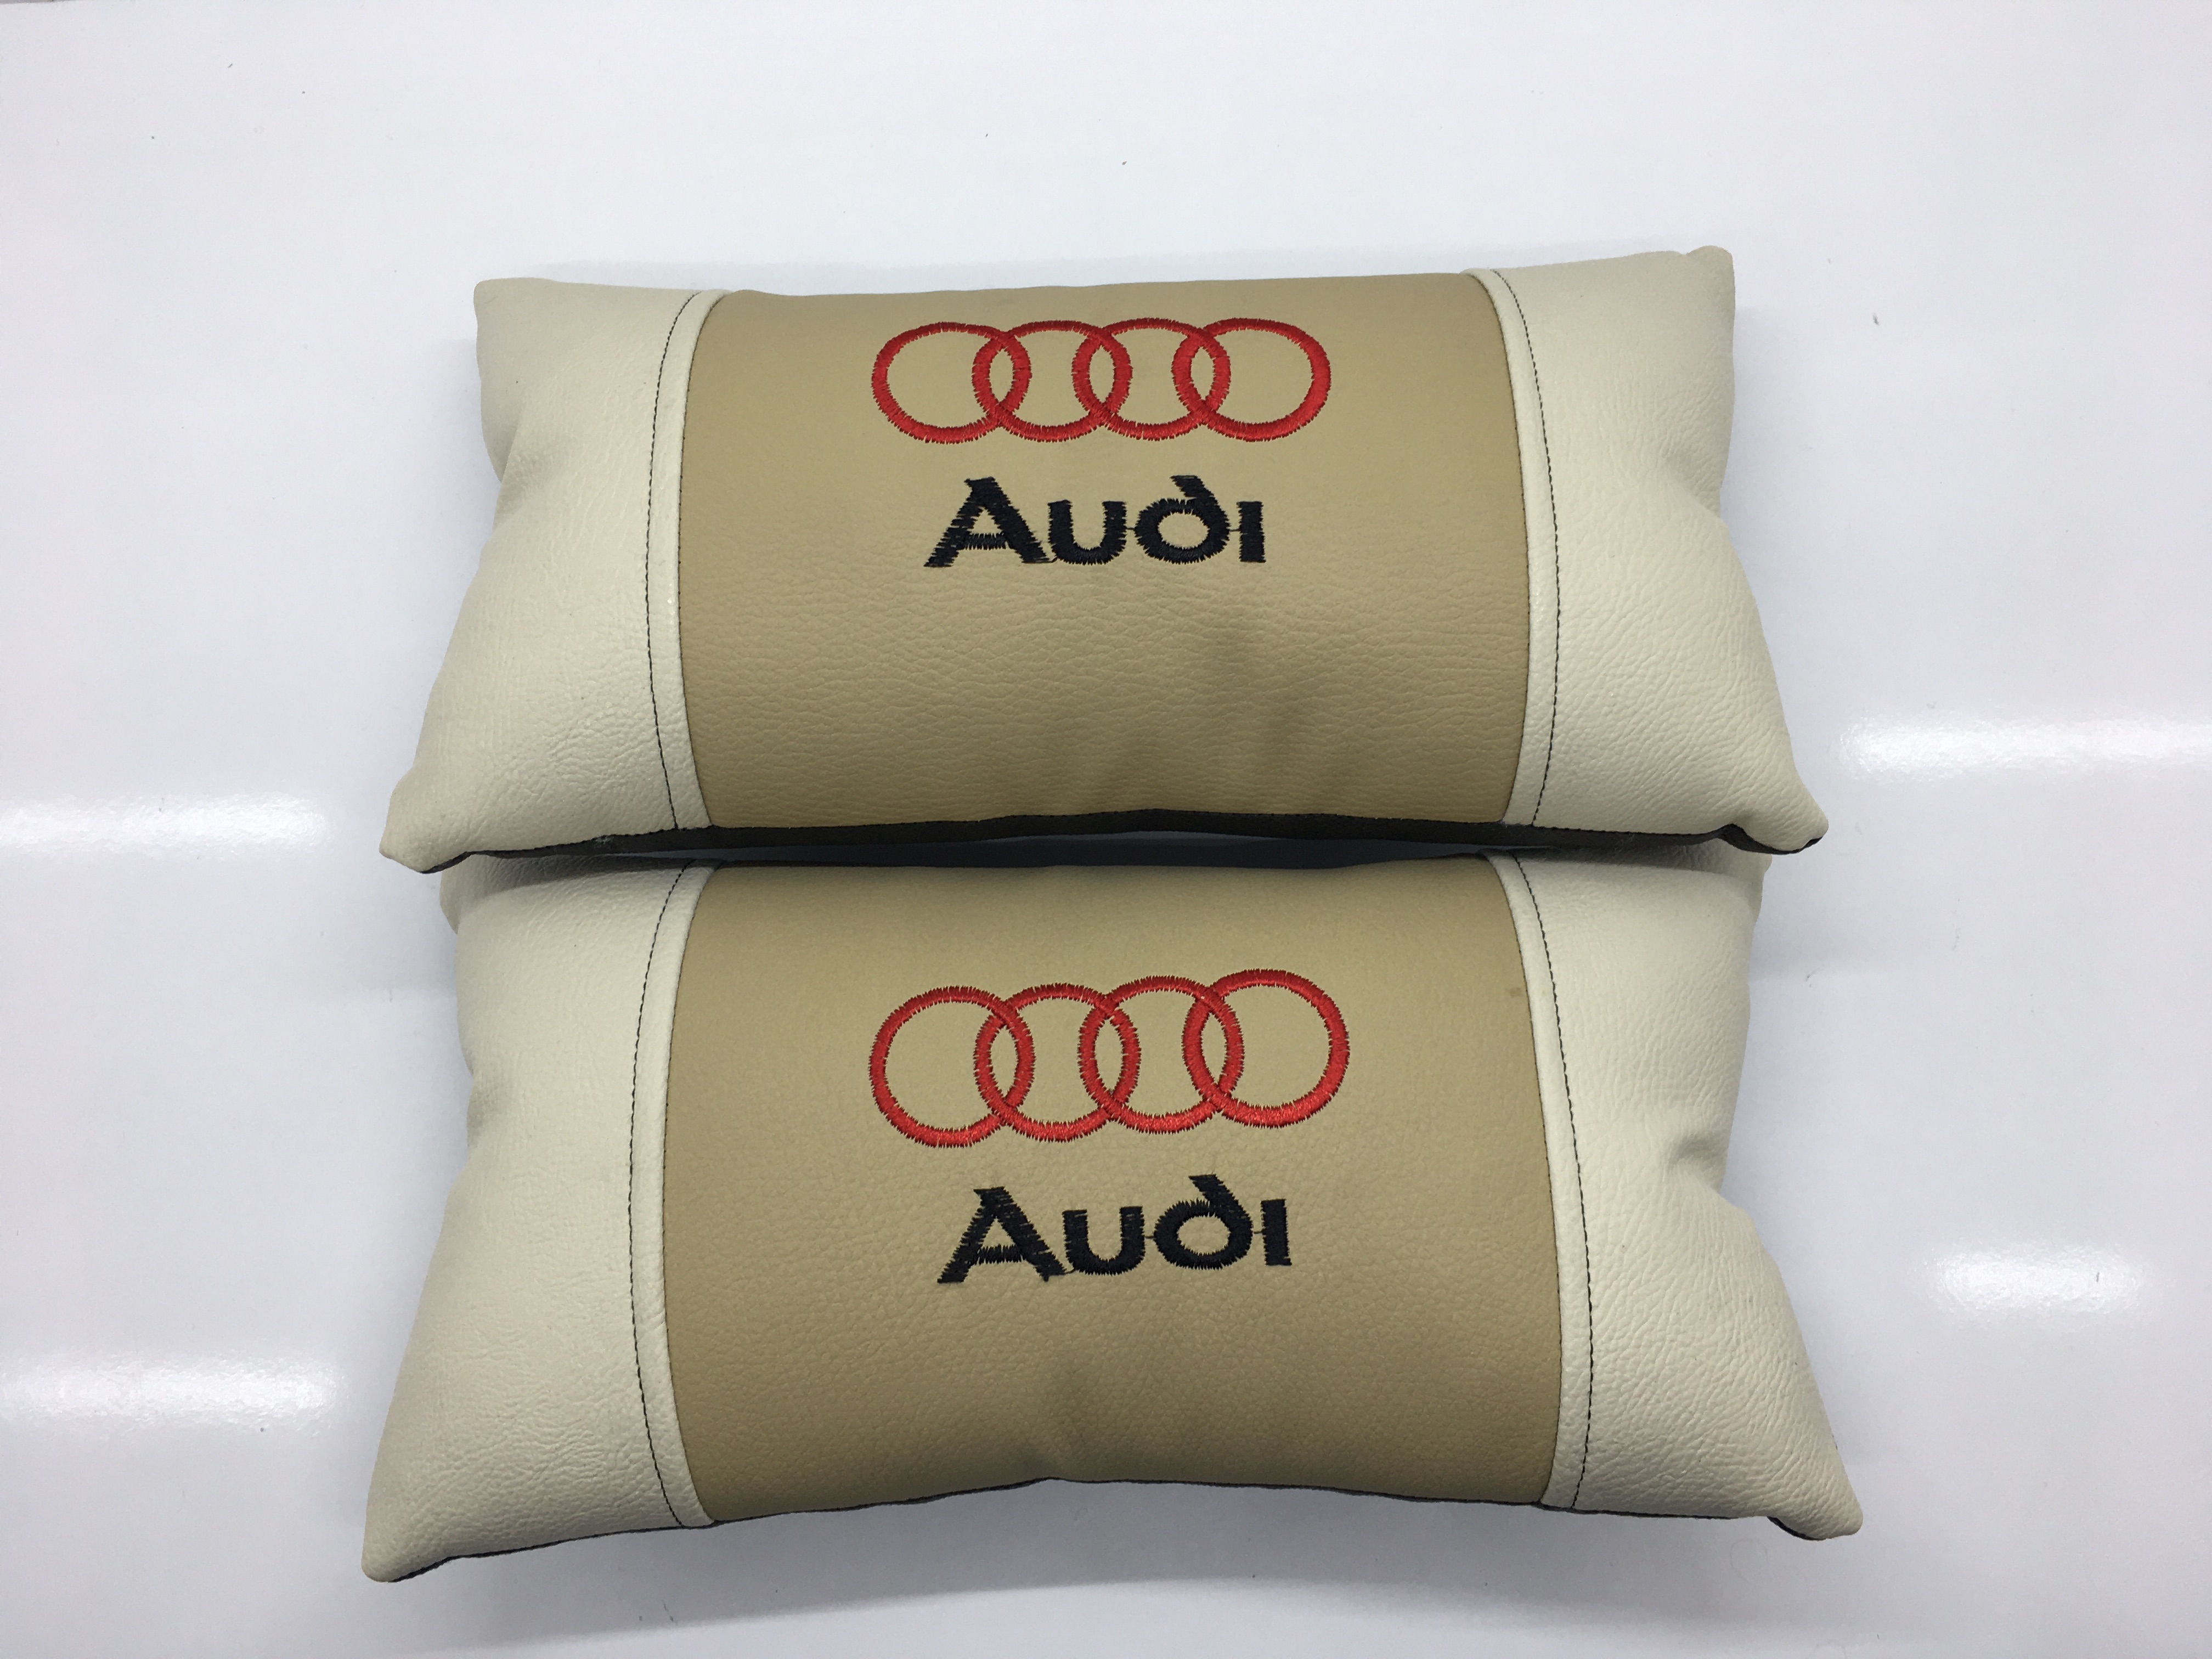 Audi Deri Ortopedik Araç Boyun Yastığı Audi Boyun Yastık 2 Adet (bej)